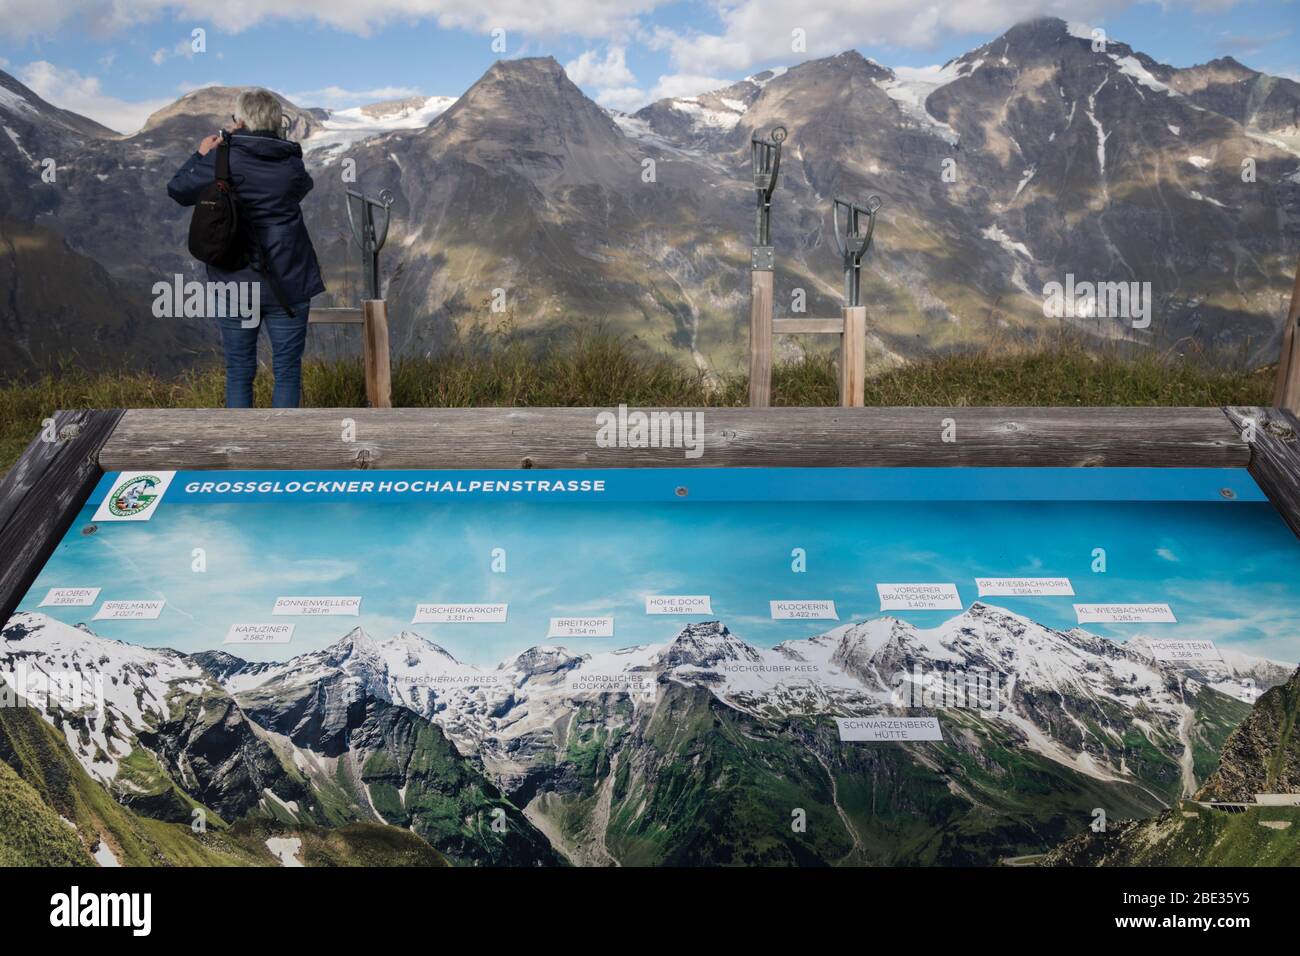 Carte touristique panoramique détaillant les sommets de montagne de la Grossglockner Hochalpenstrasse en premier plan, tandis qu'une femme voit les pics réels en t Banque D'Images